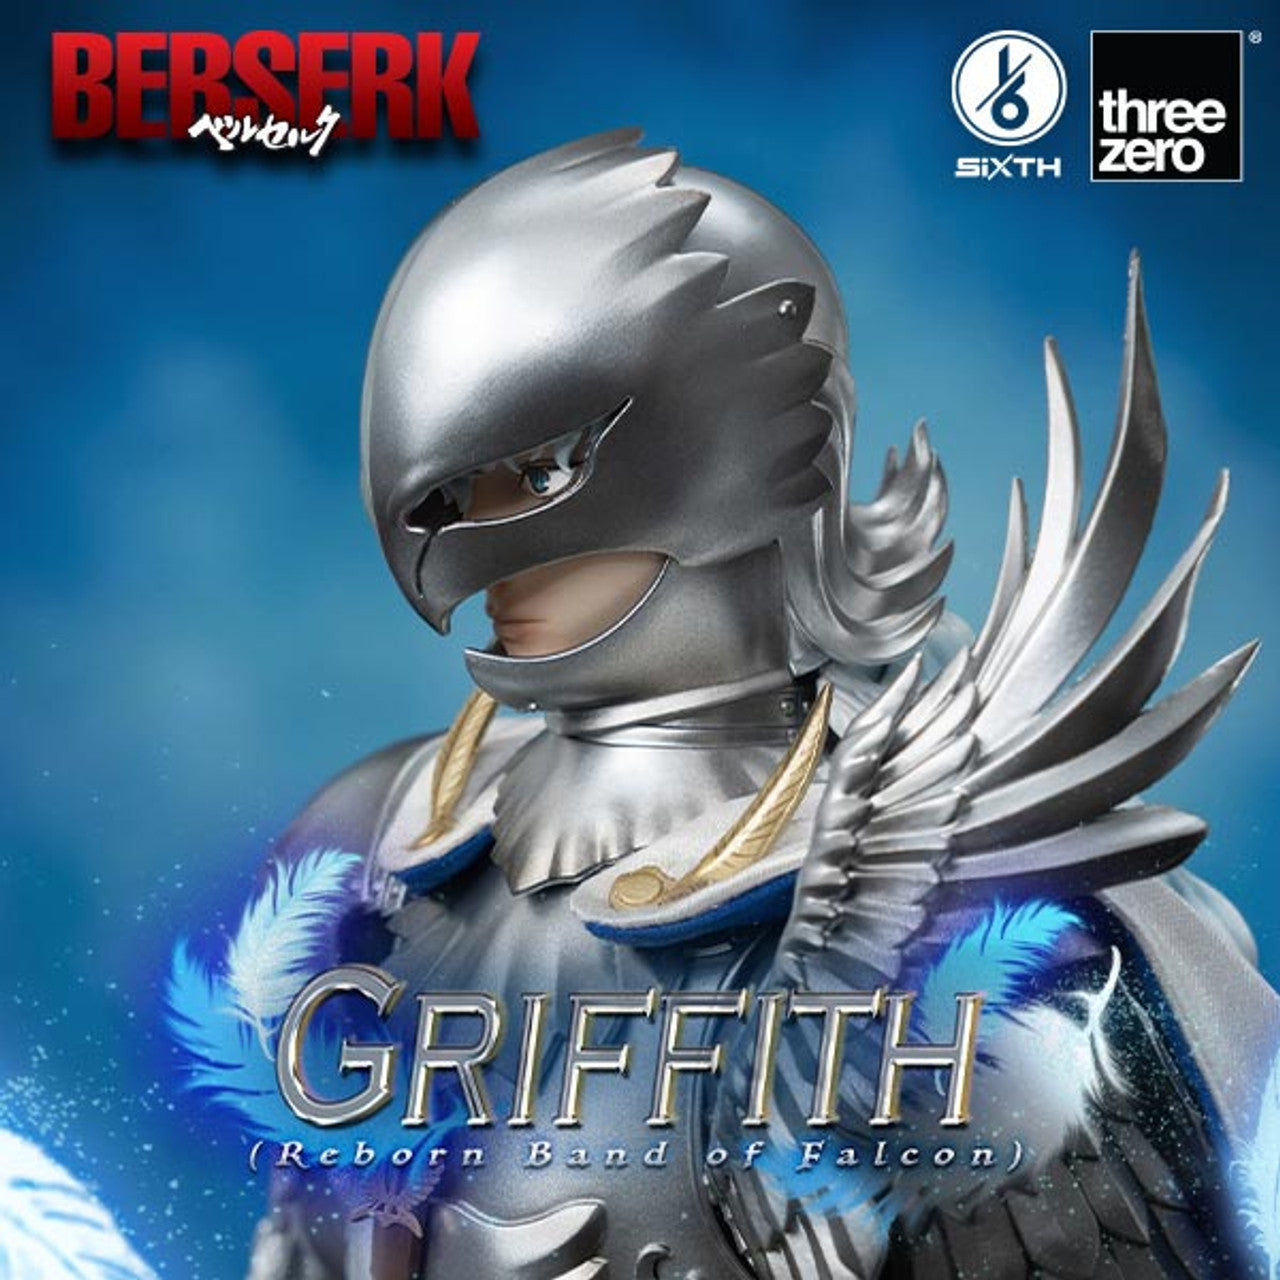 Preventa Figura Griffith (Reborn Band of Falcon) - BERSERK marca Threezero 3Z0094 escala 1/6